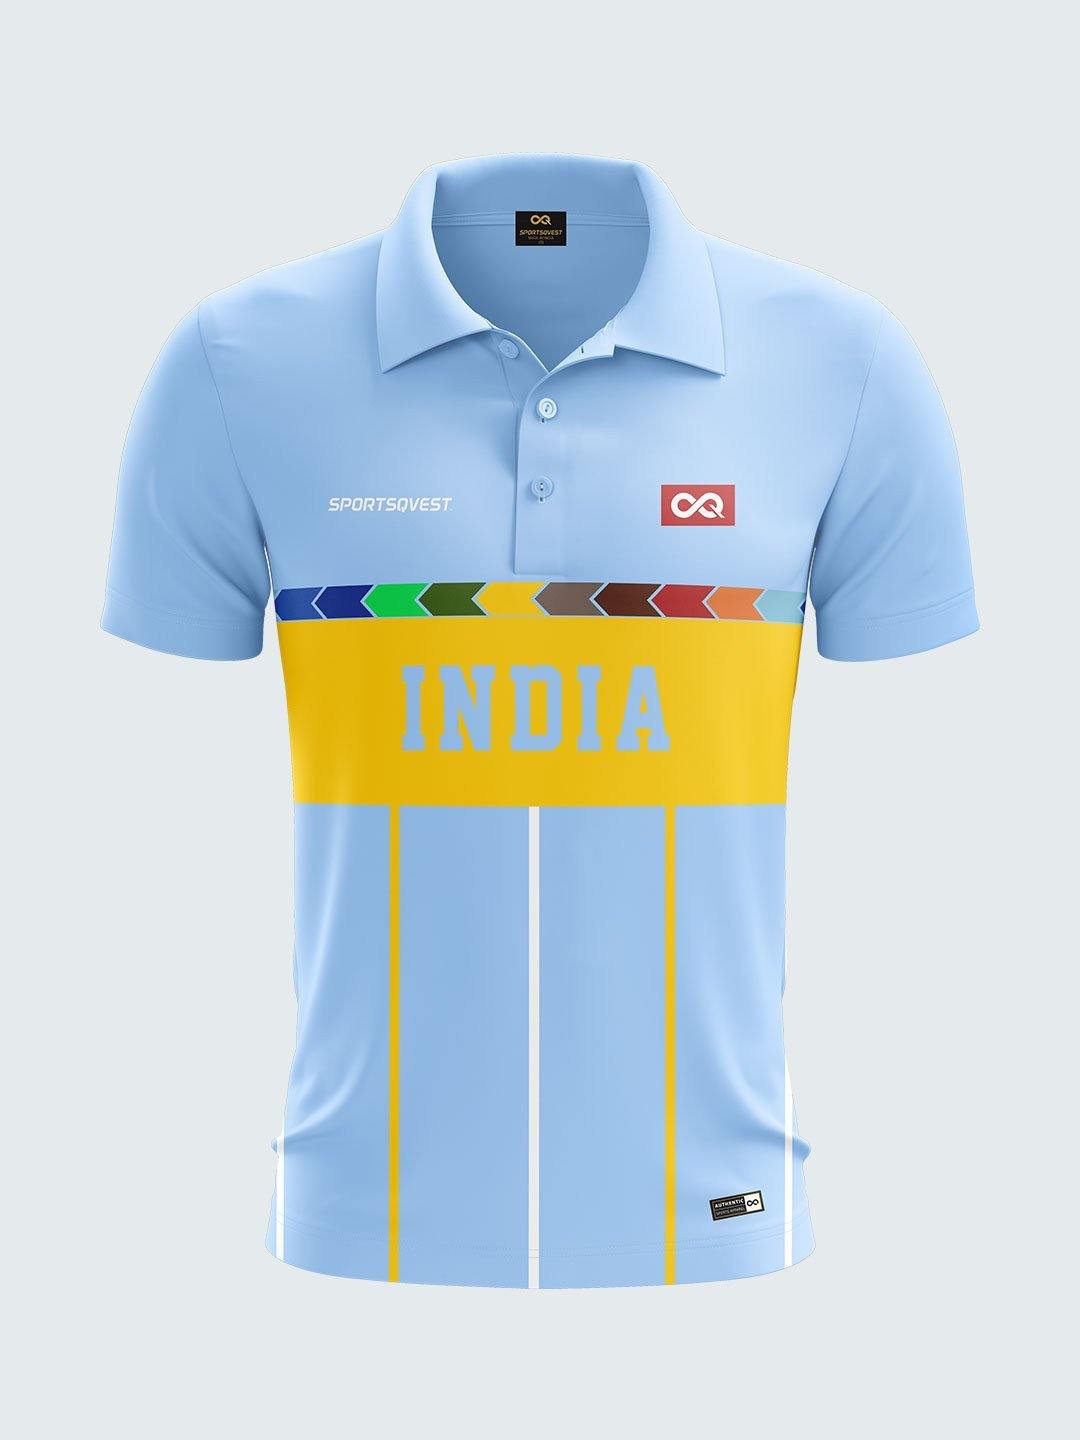 india retro cricket jersey